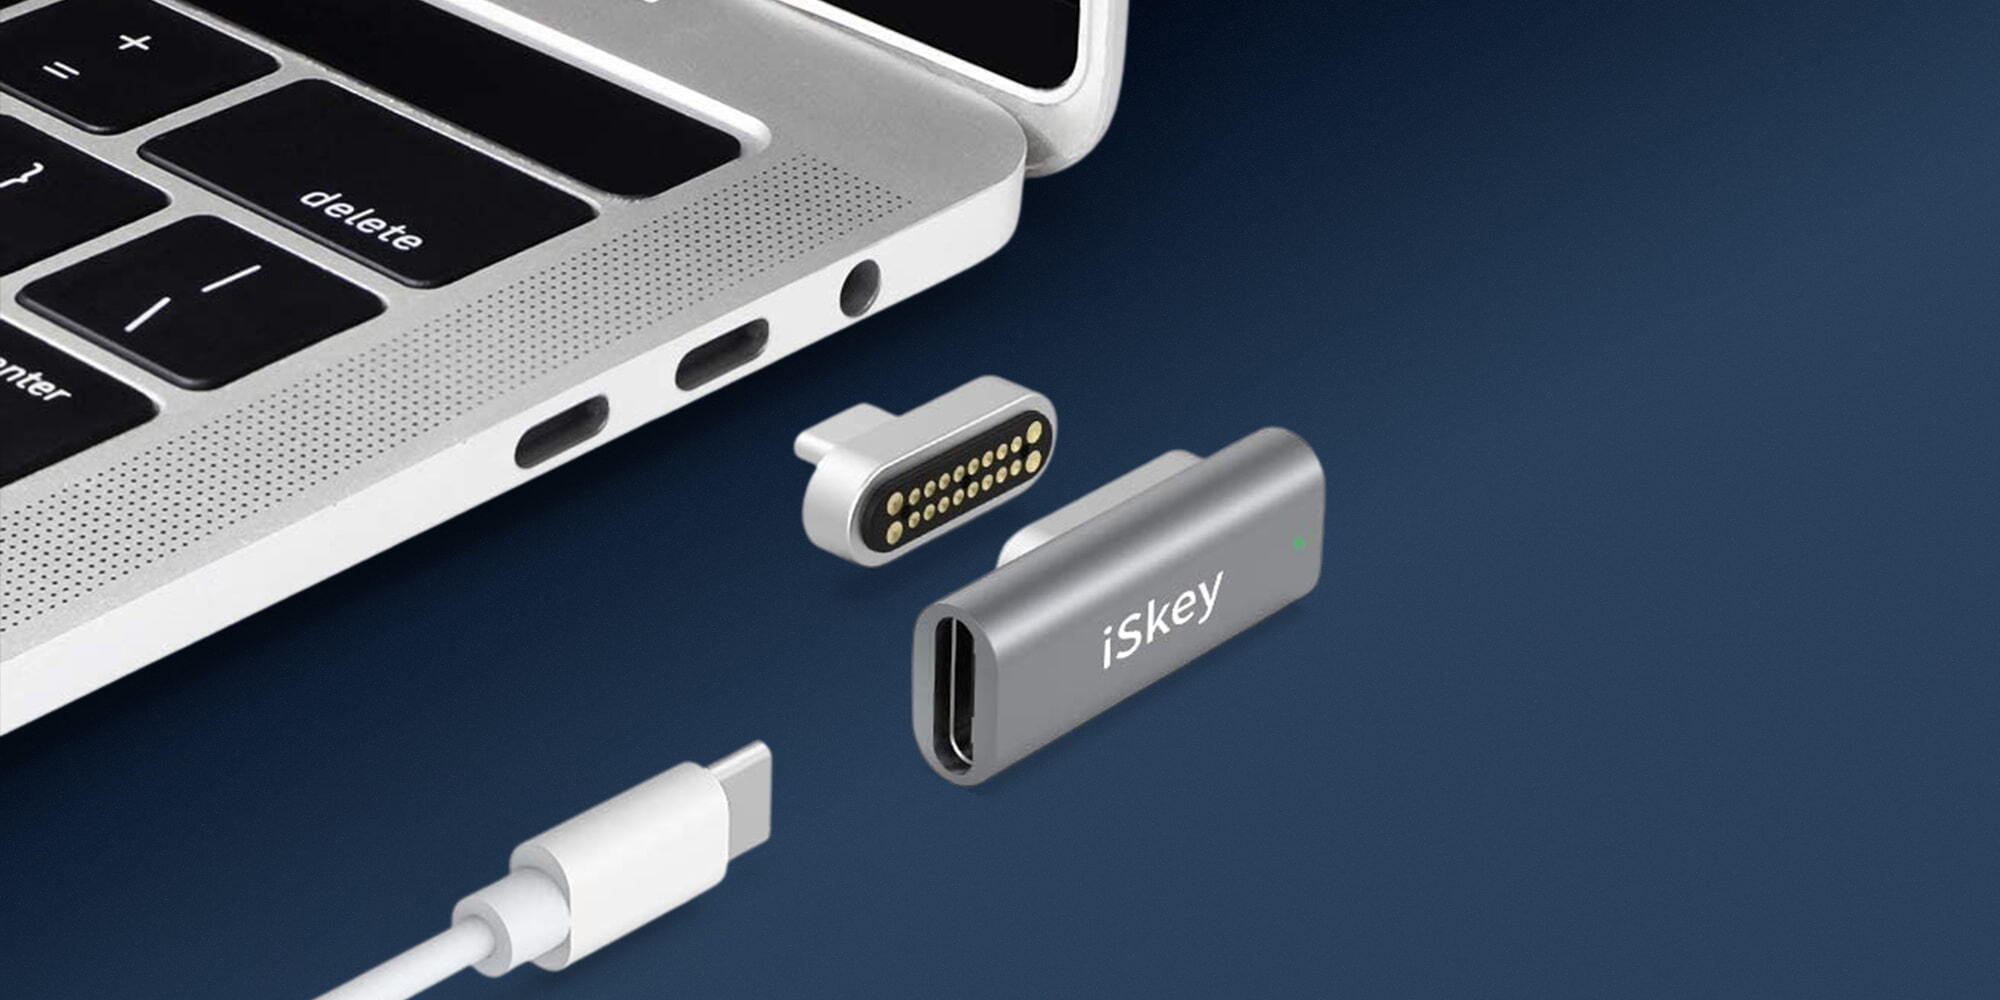 Add MagSafe USB-C or iPad - 9to5Mac